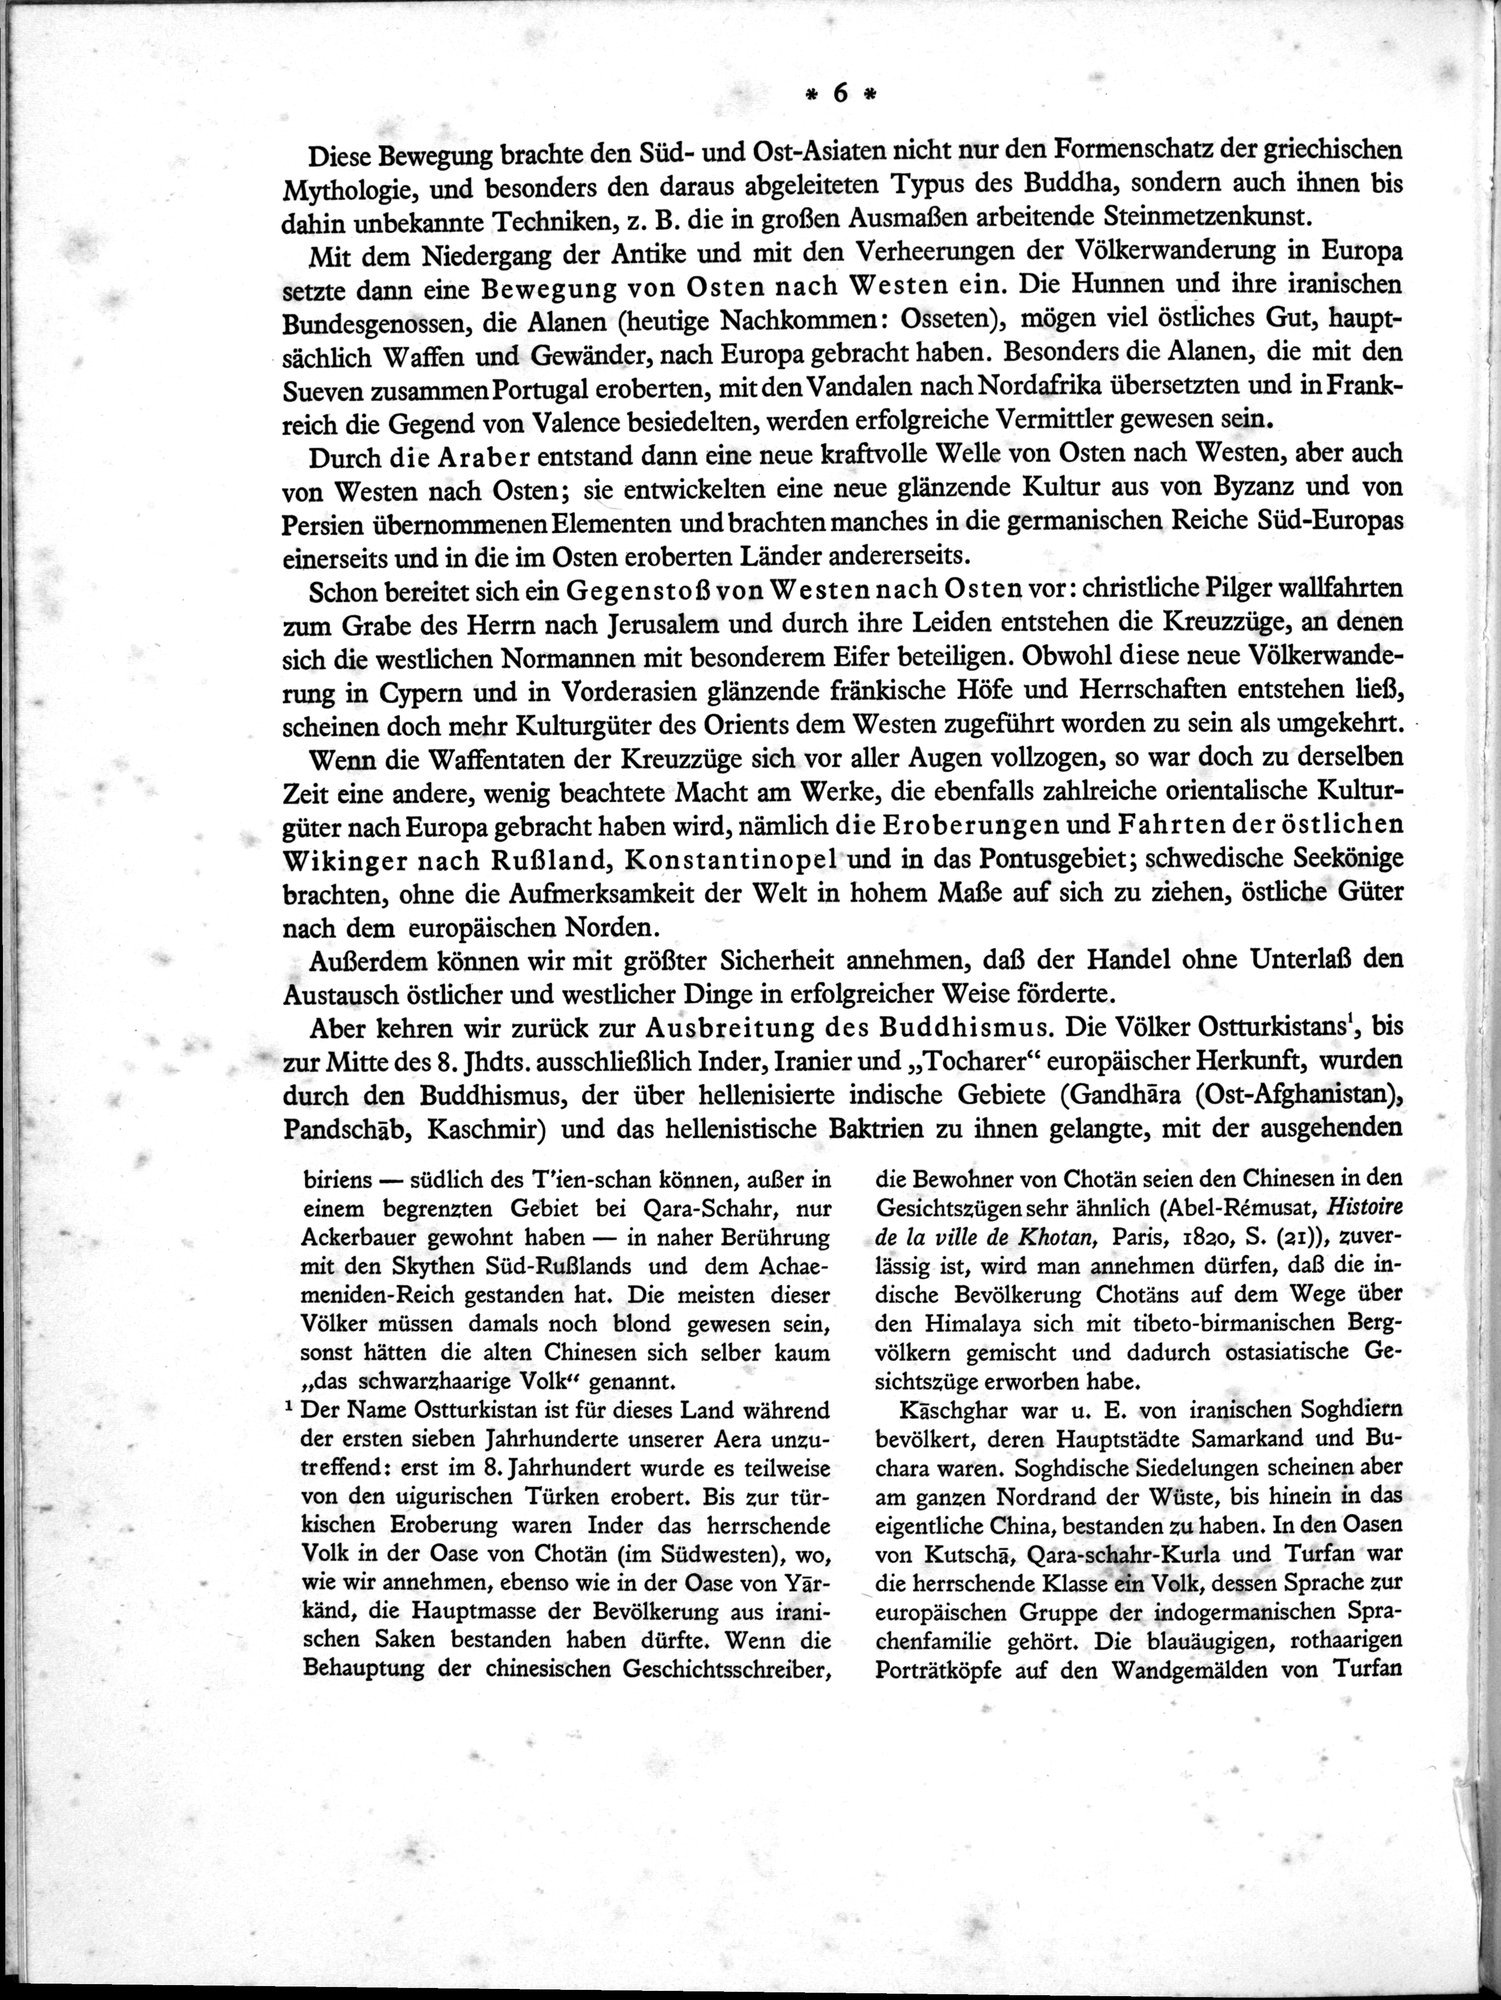 Bilderatlas zur Kunst und Kulturgeschichte Mittel-Asiens : vol.1 / Page 10 (Grayscale High Resolution Image)